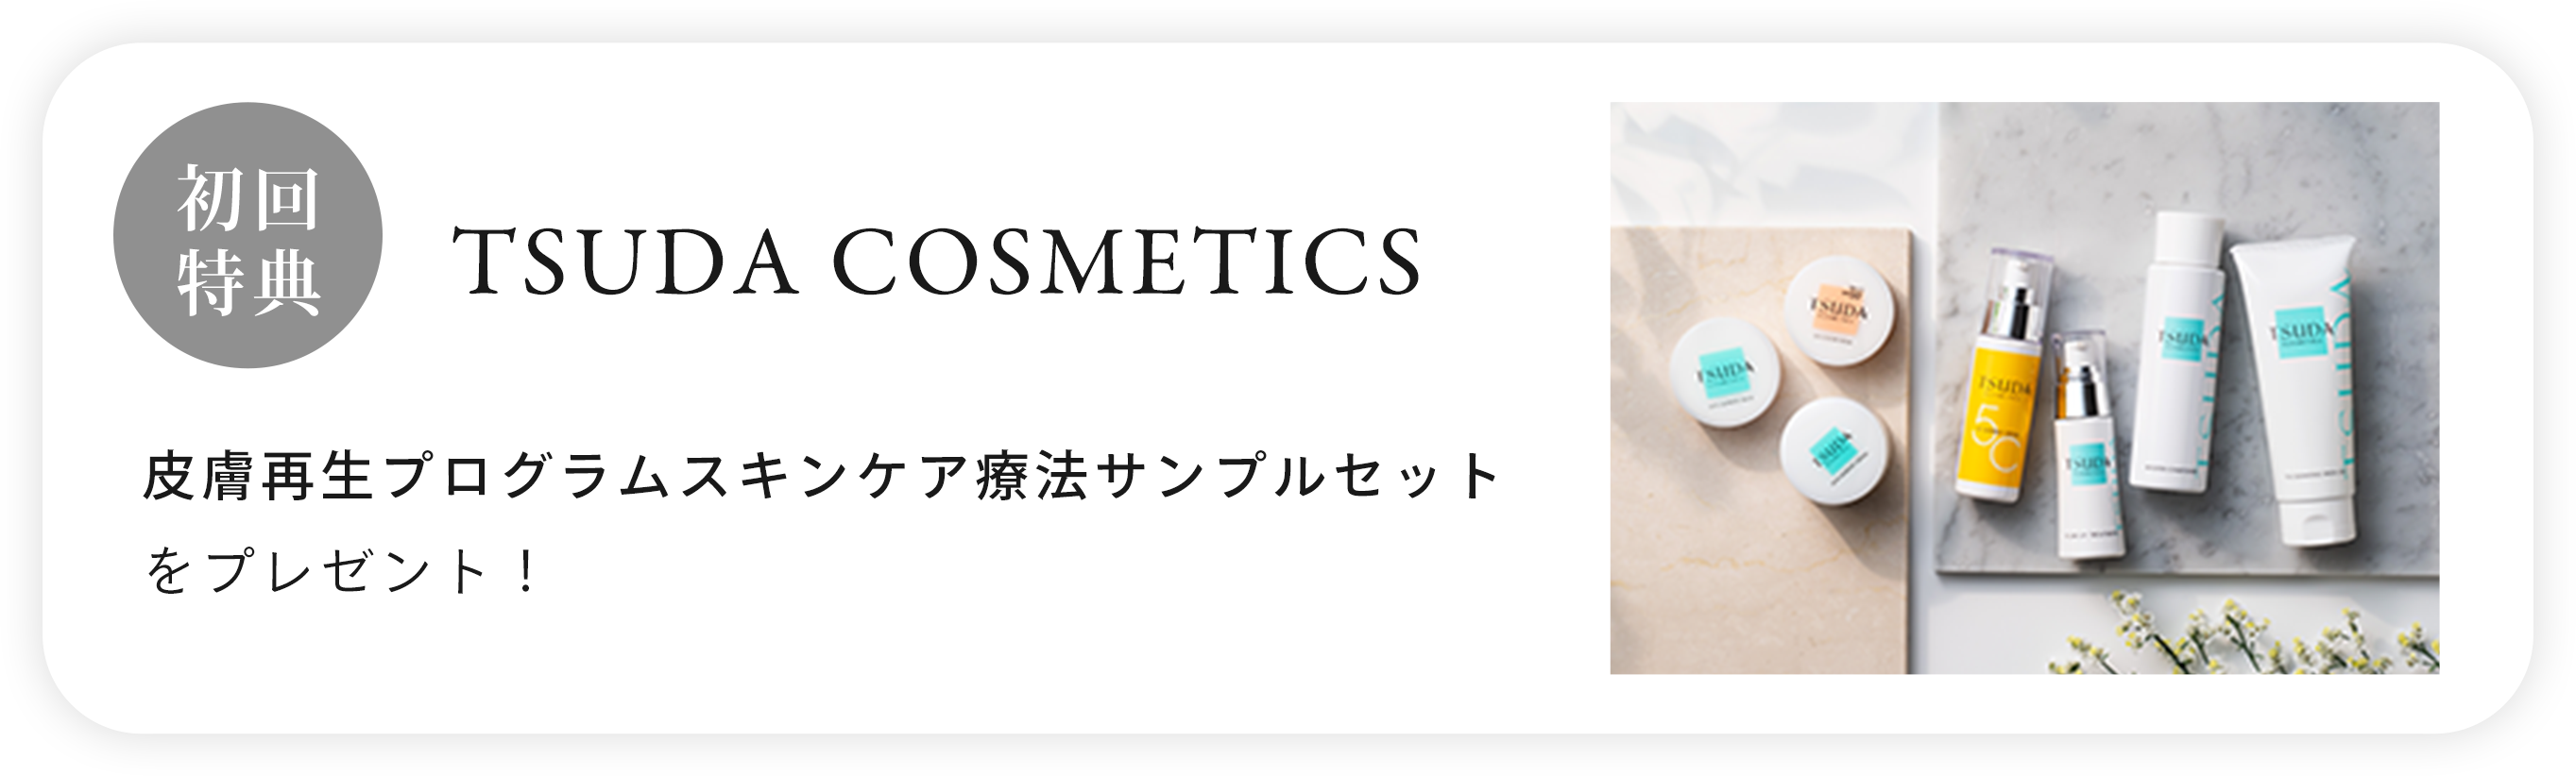 初回特典 TSUDA COSMETICS 皮膚再生プログラムスキンケア療法サンプルセットをプレゼント！